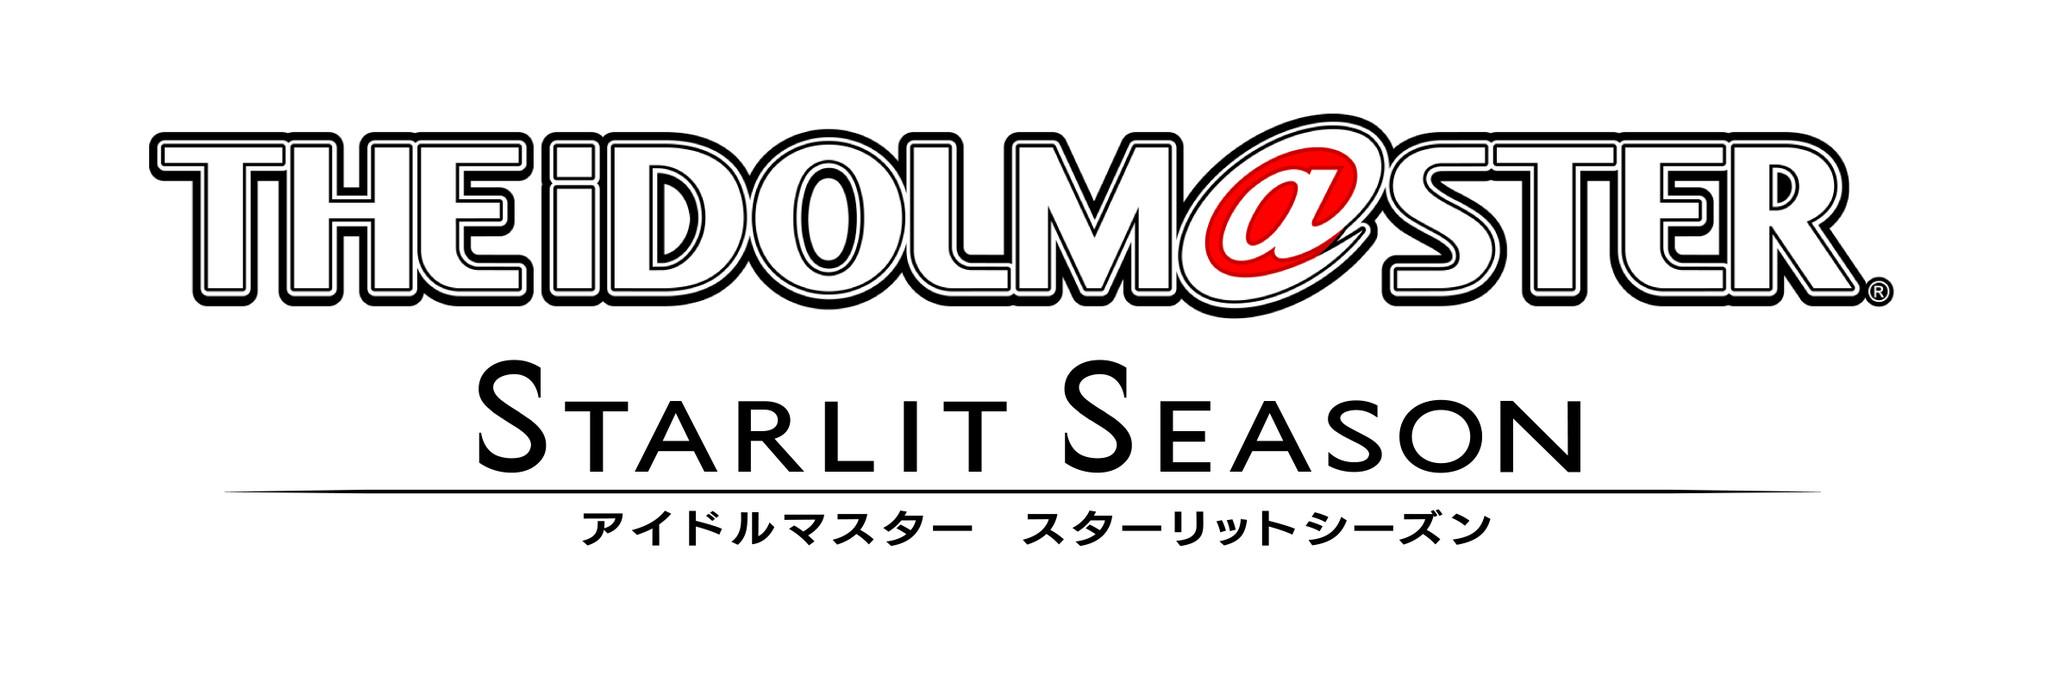 Playstation 4 Steam The Idolm Ster Starlit Season アイドルマスター スターリットシーズン 発売決定のお知らせ 株式会社バンダイナムコエンターテインメントのプレスリリース